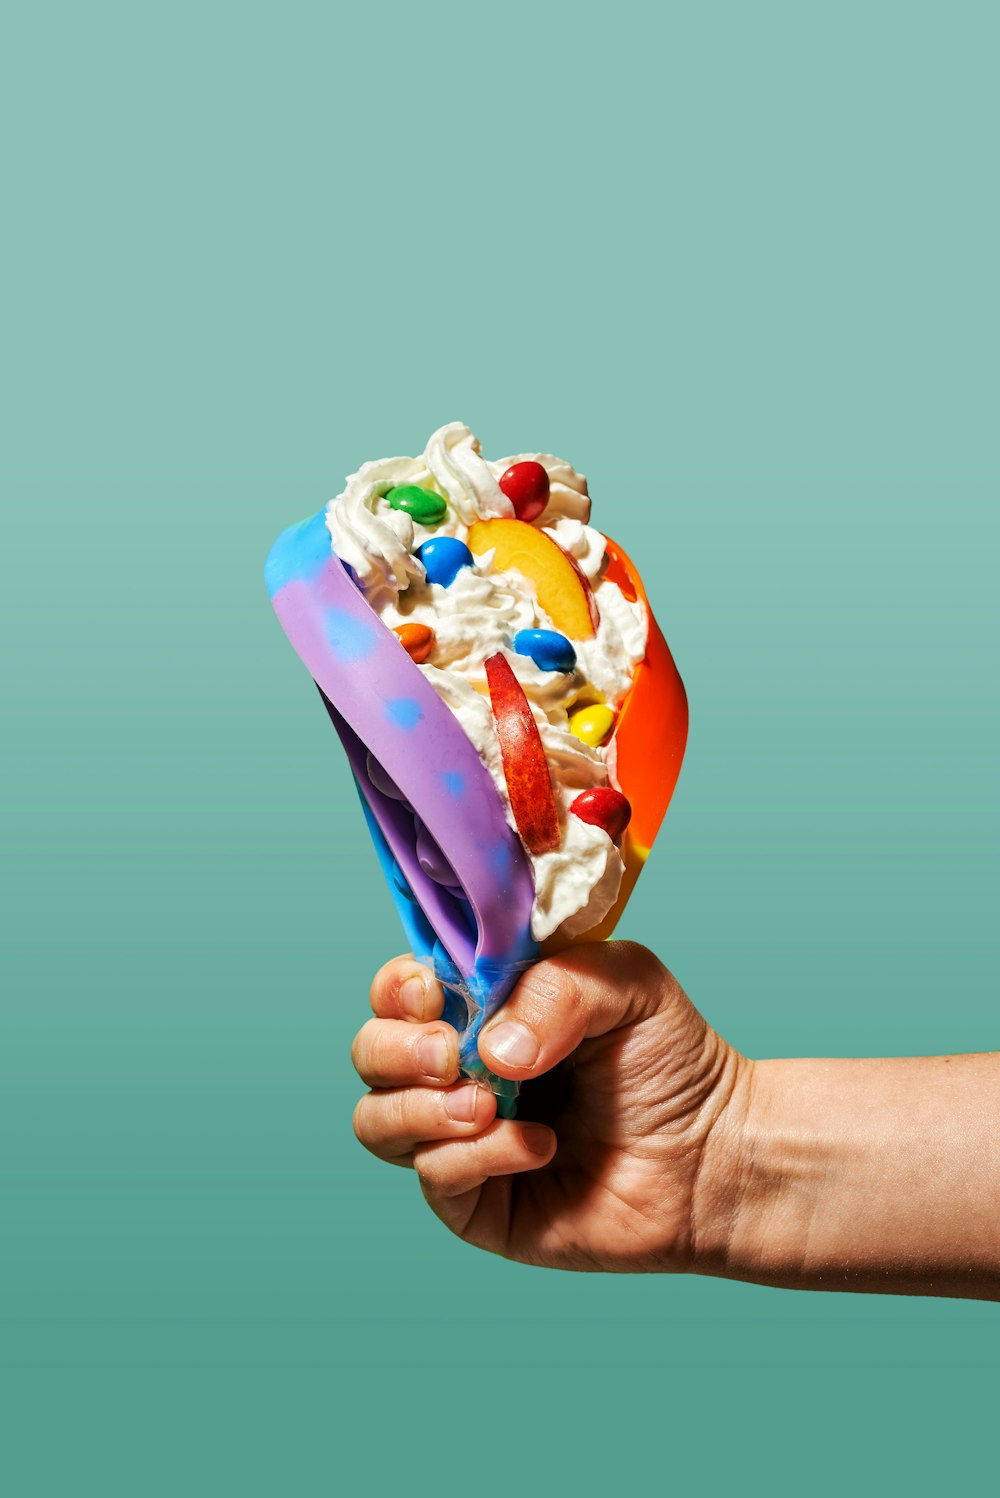 Una mano sosteniendo una bola de helado con ingredientes coloridos